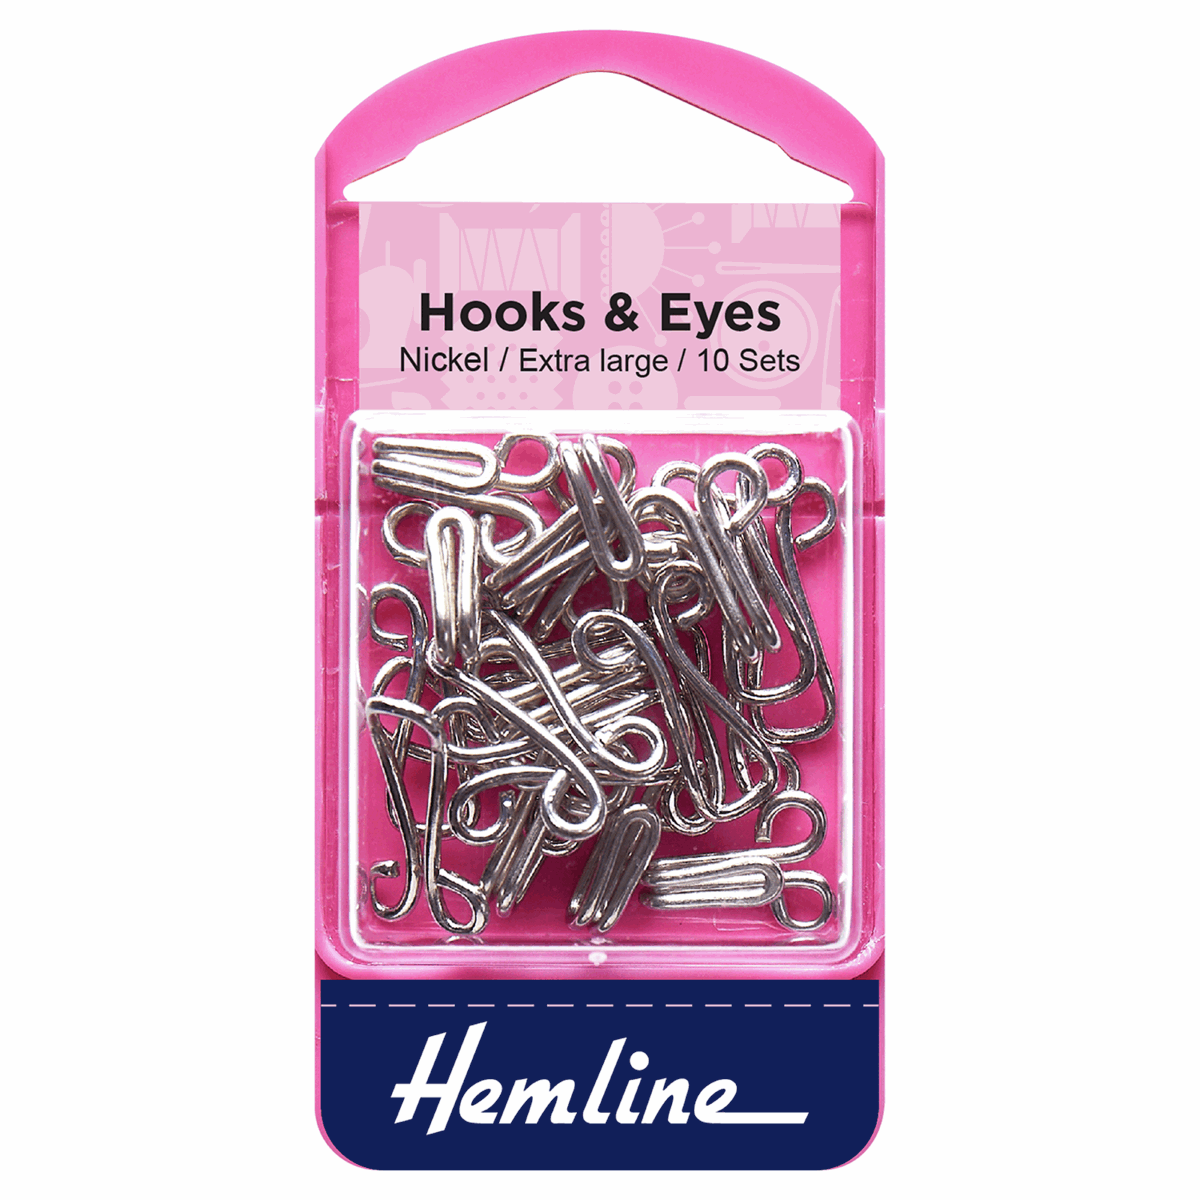 Hemline Extra Large Hooks and Eyes Size 9 - Nickel - My Sewing Box